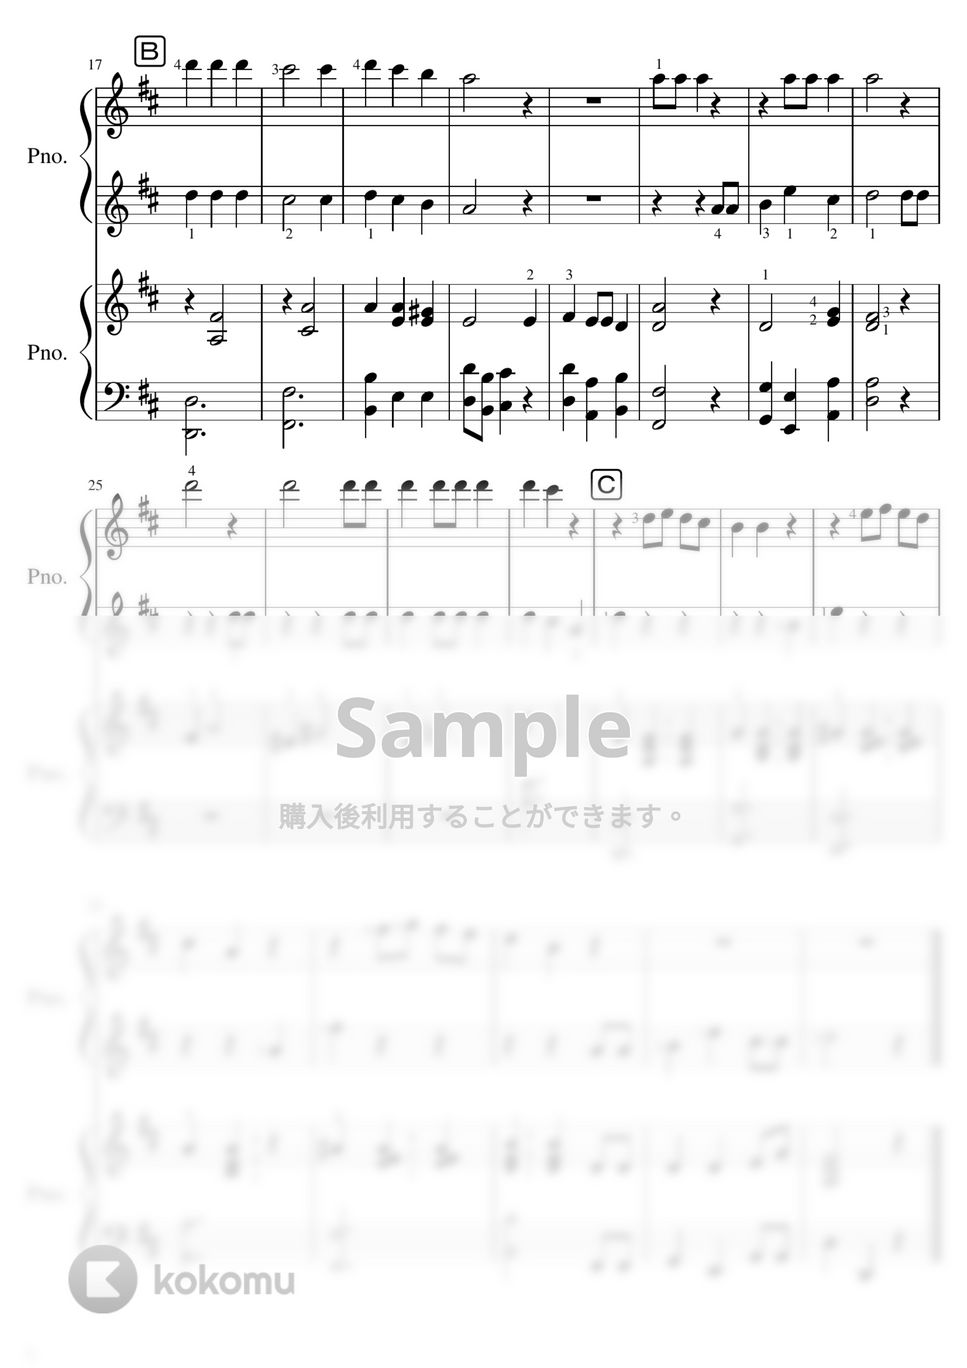 【ピアノ連弾】おめでとうクリスマス/We wish a merry christmas (ピアノ連弾) by ピアノの先生の楽譜集